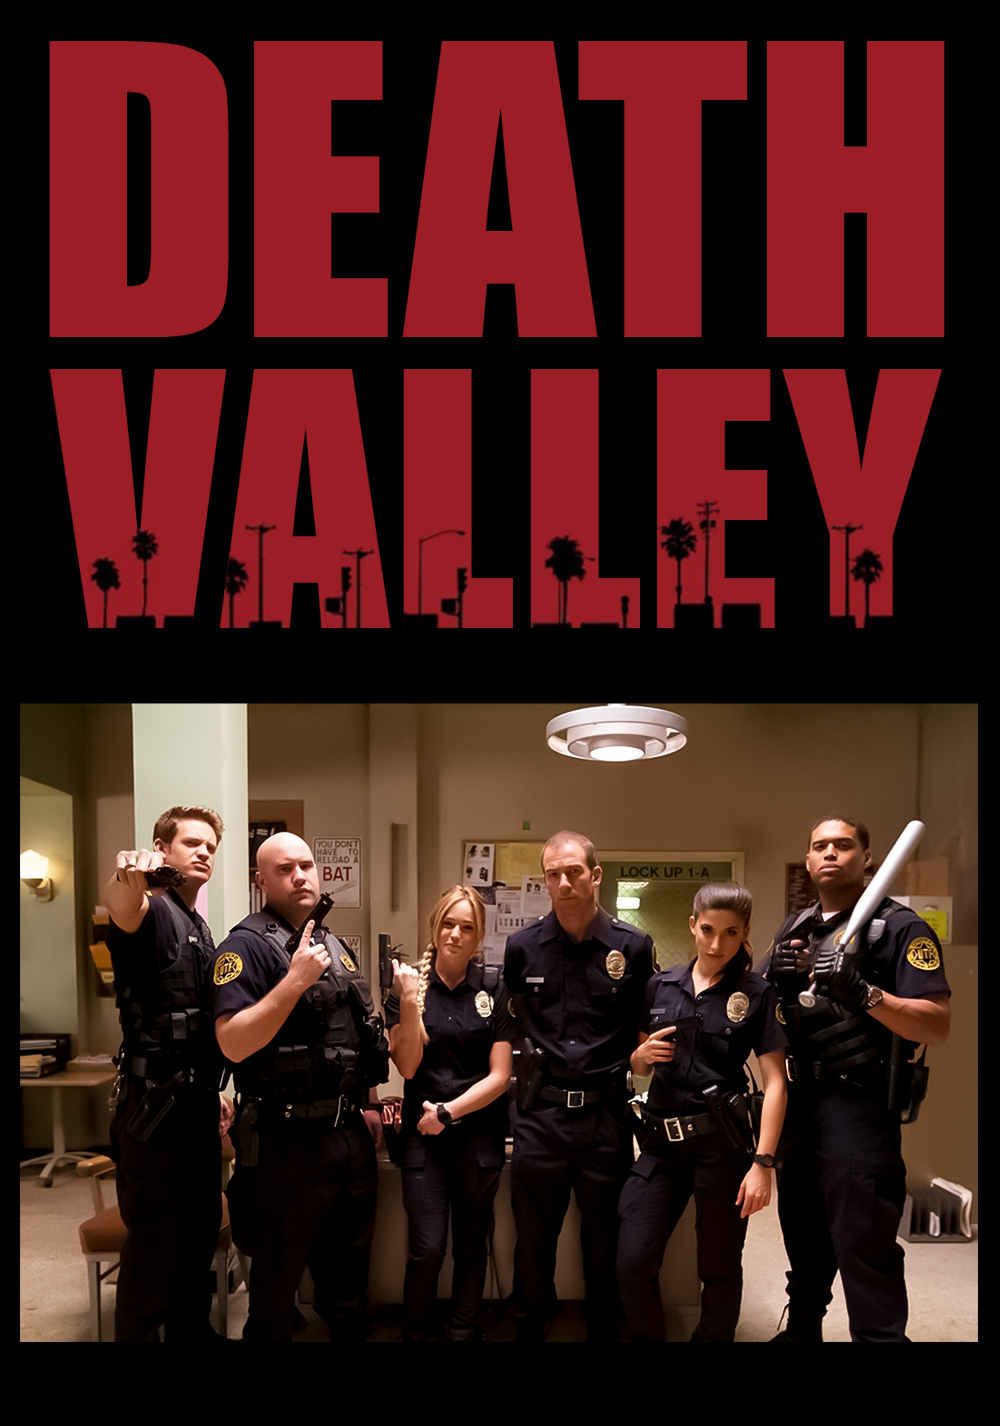 La serie tv dimenticata di Death Valley